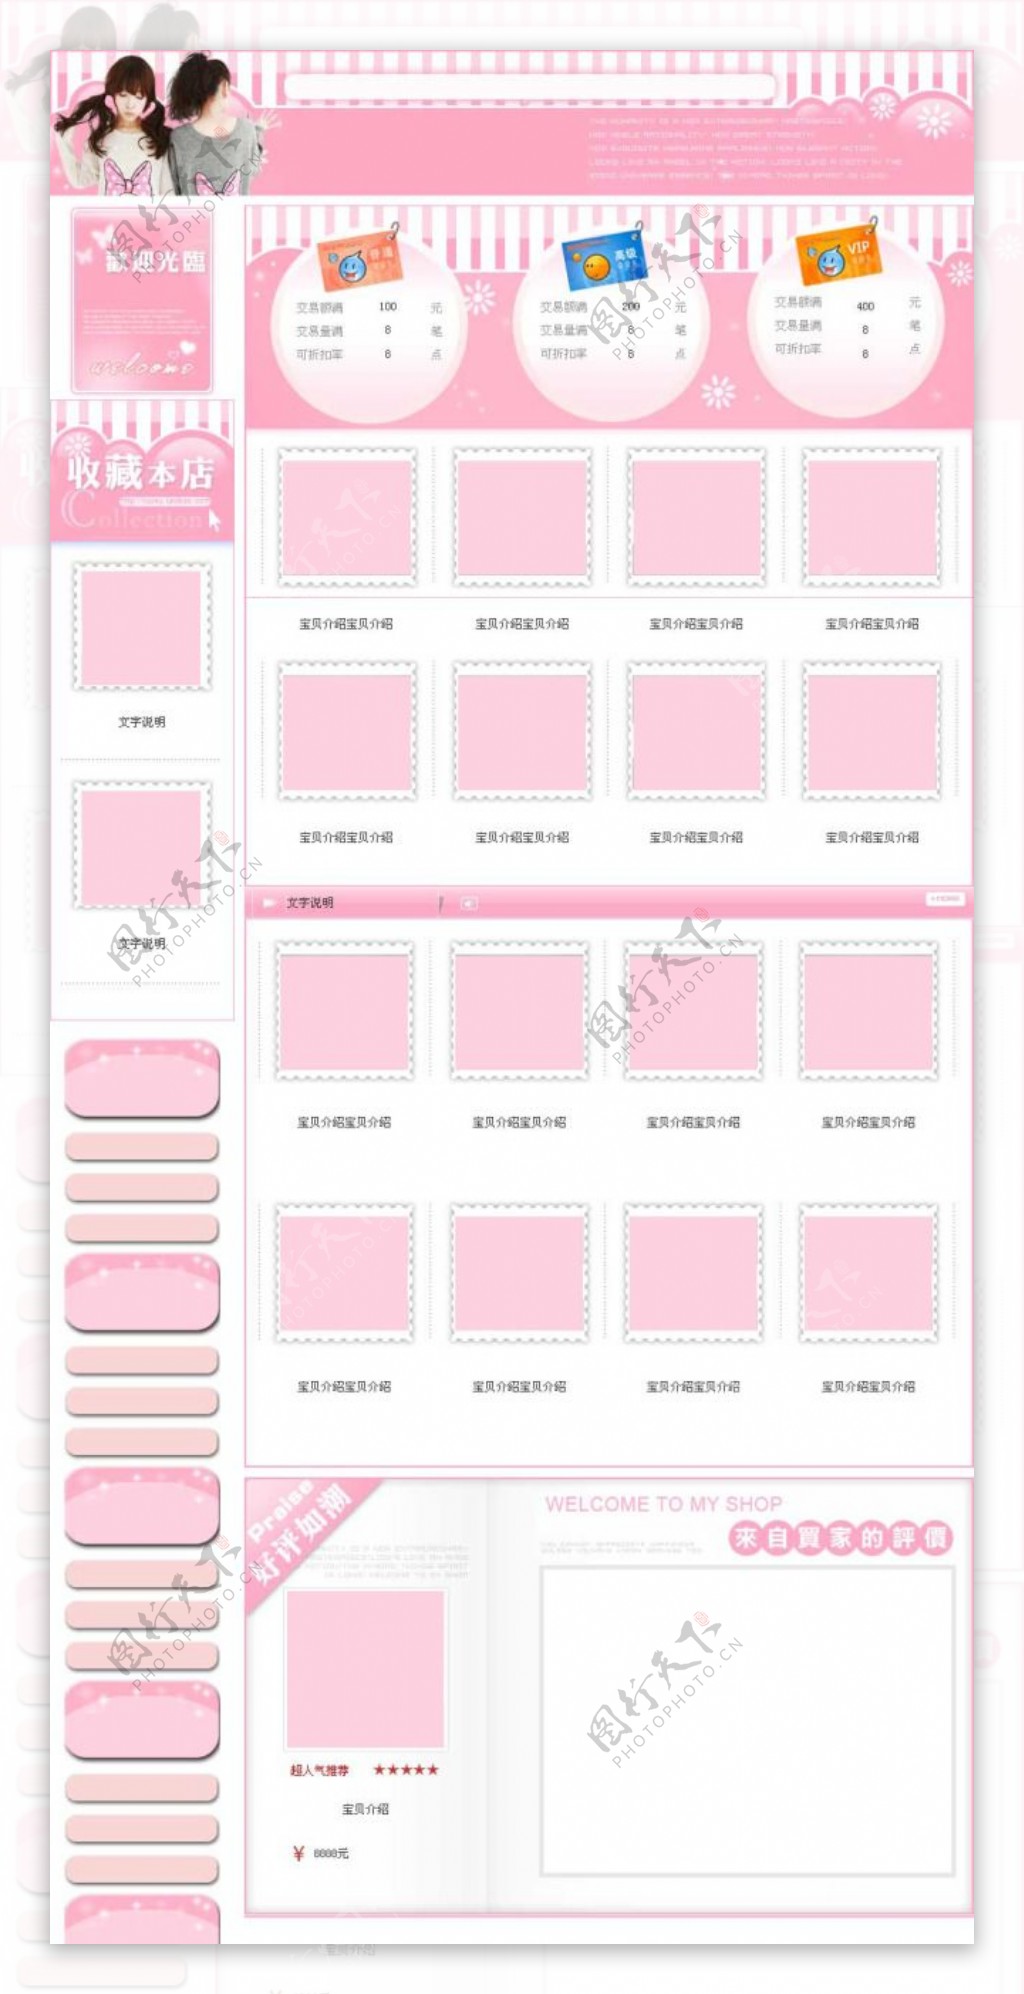 非常受到大家喜欢的粉红色淘宝店铺通用免费整套模板